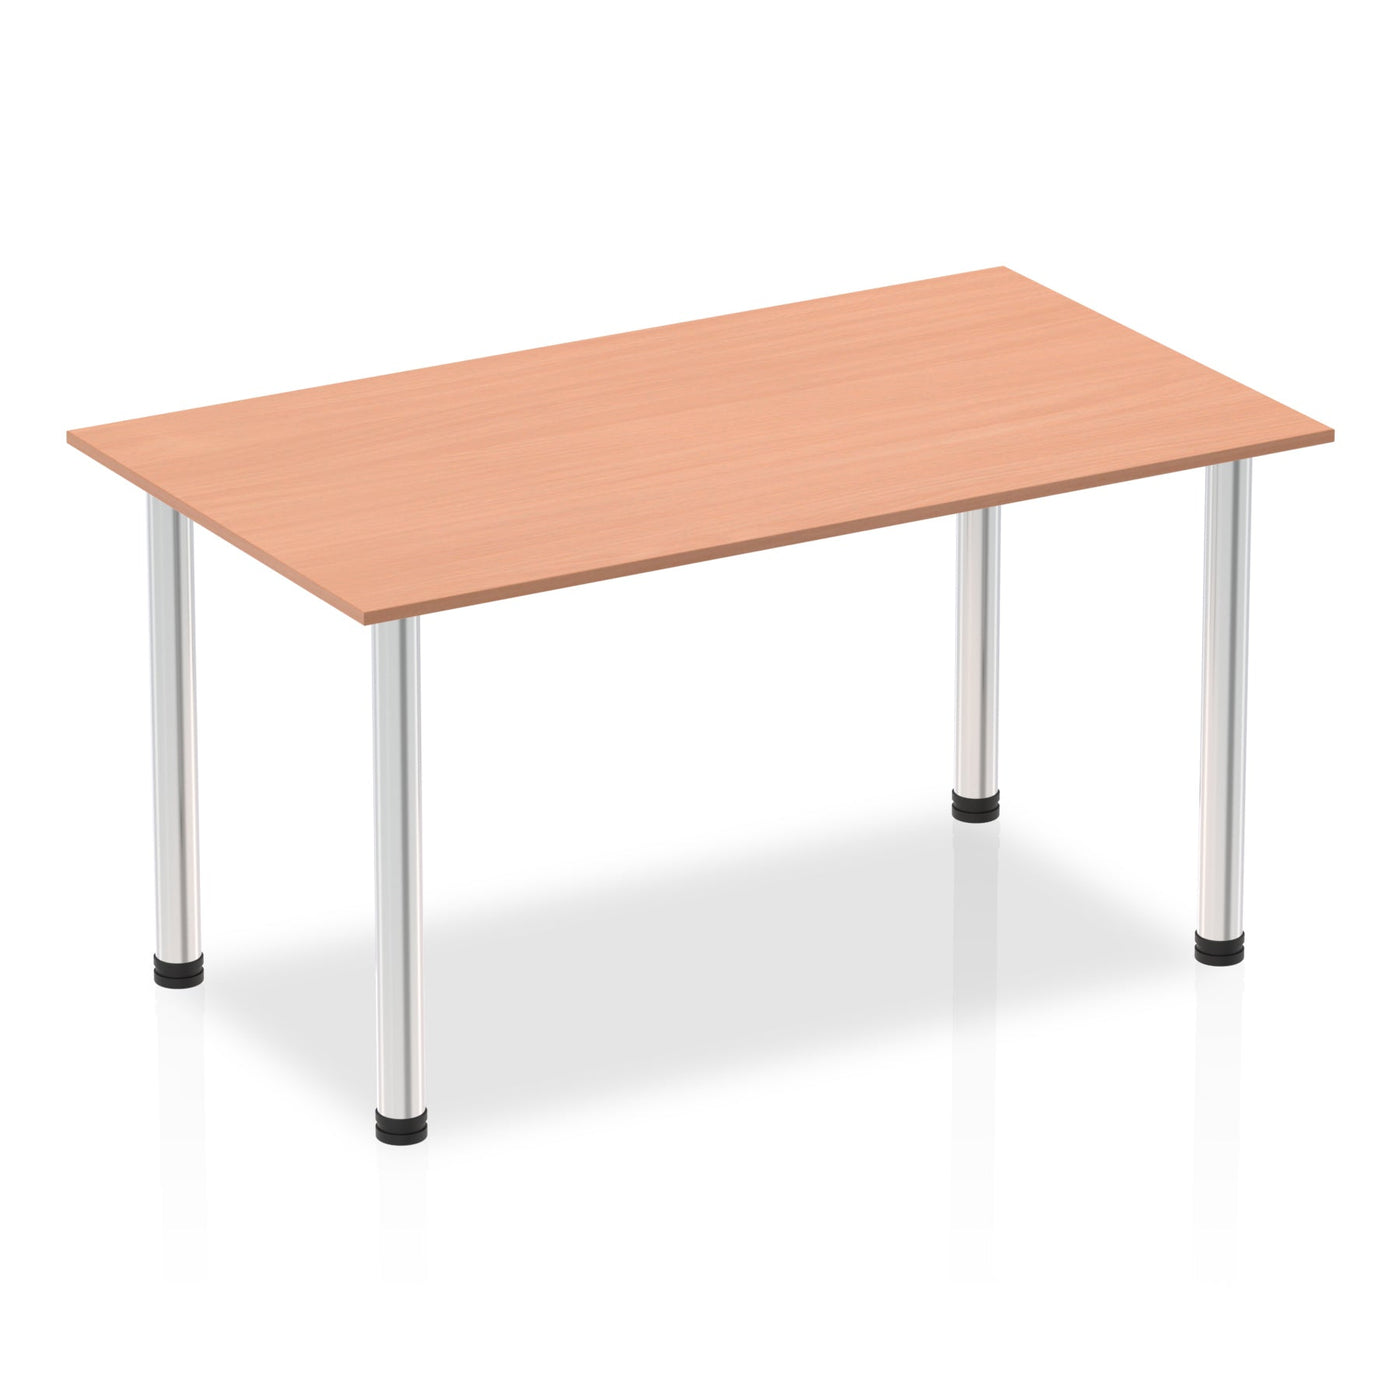 Impulse 1400mm Straight Desk with Post Leg | Home Office Furniture | Work Desk | Homework Desk | Work from home | Wooden Desk | Wooden Desk with post legs 